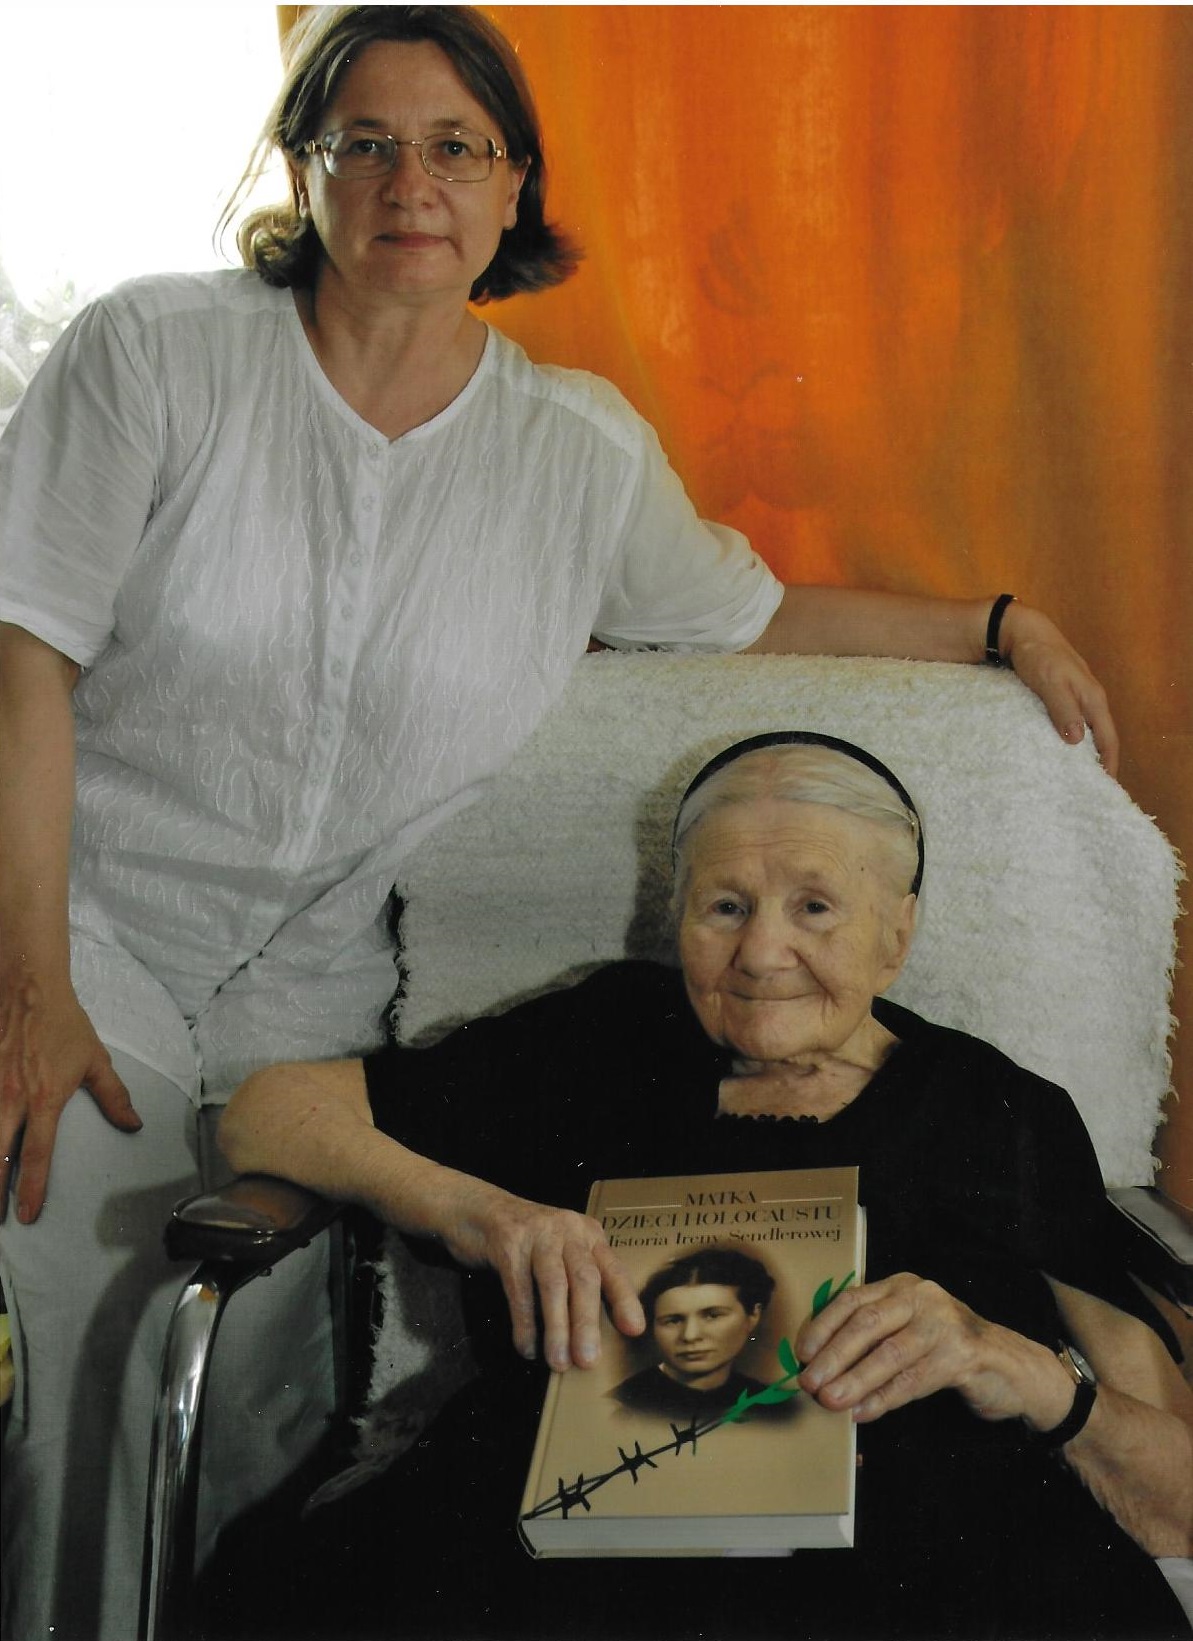 Irena Sendler e Anna Mieszkowska. Dono graditissimo ricevuto dalla giornalista in occasione della rappresentazione teatrale in Varsavia